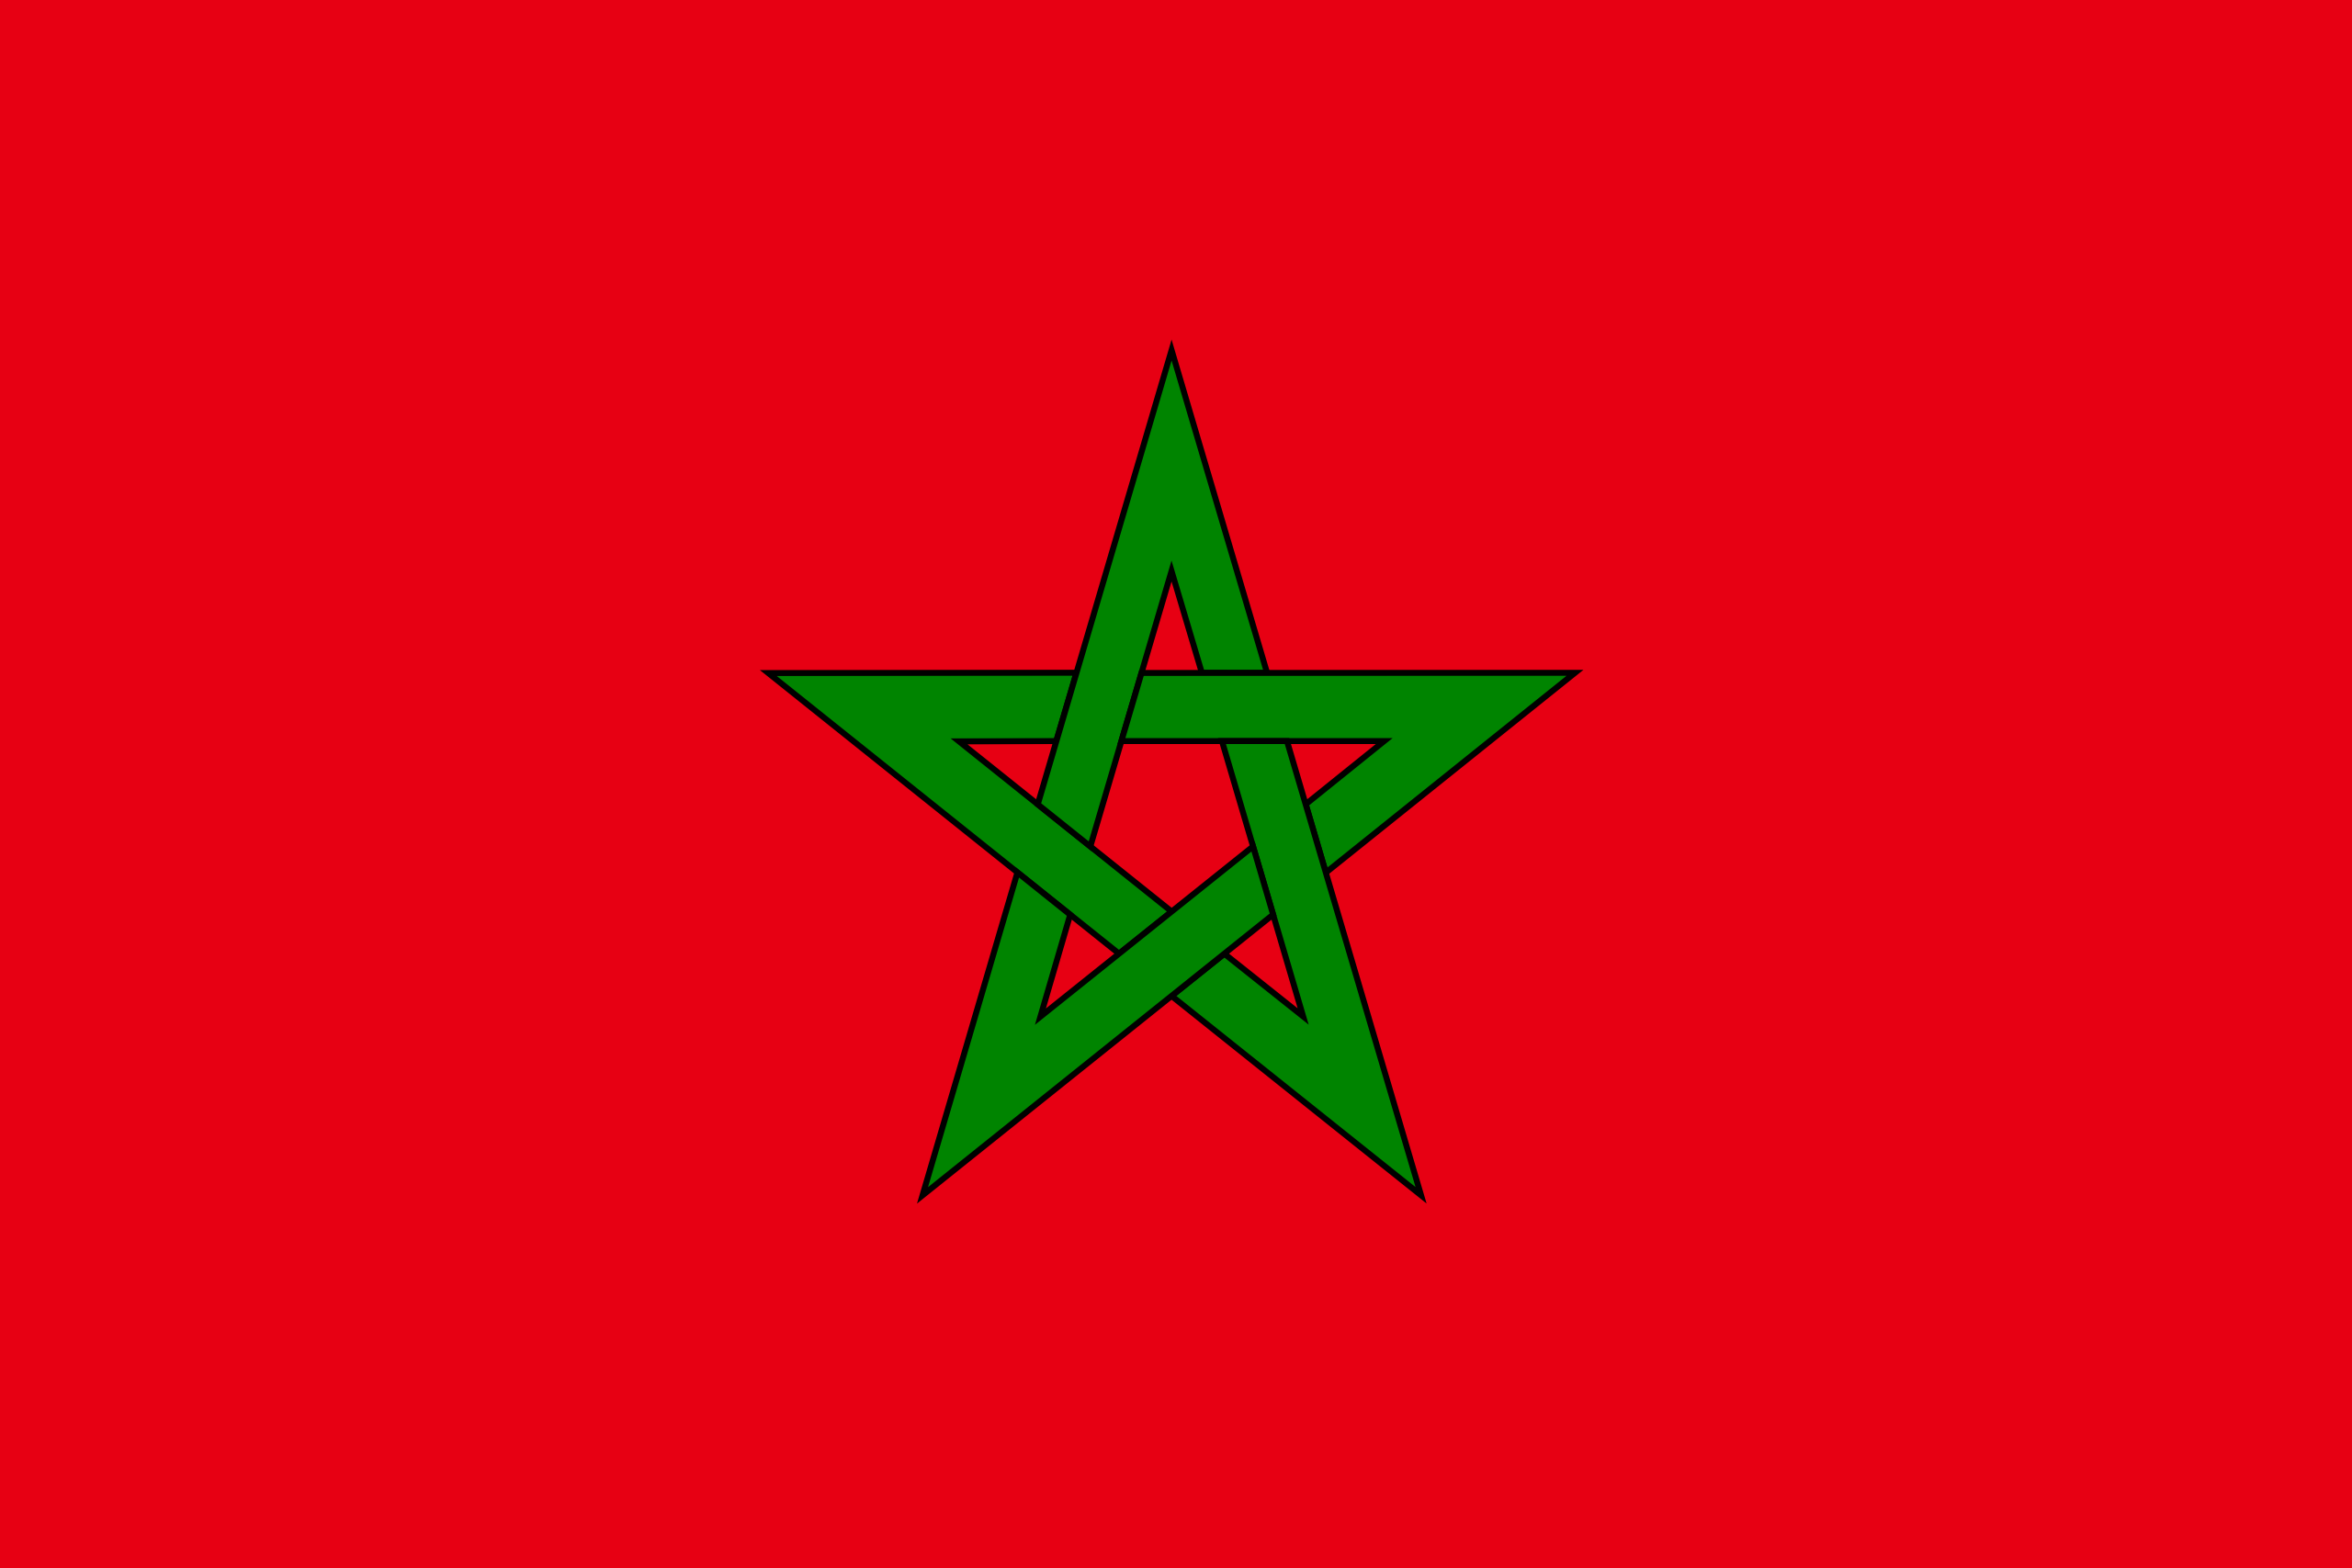 Morocco's flag